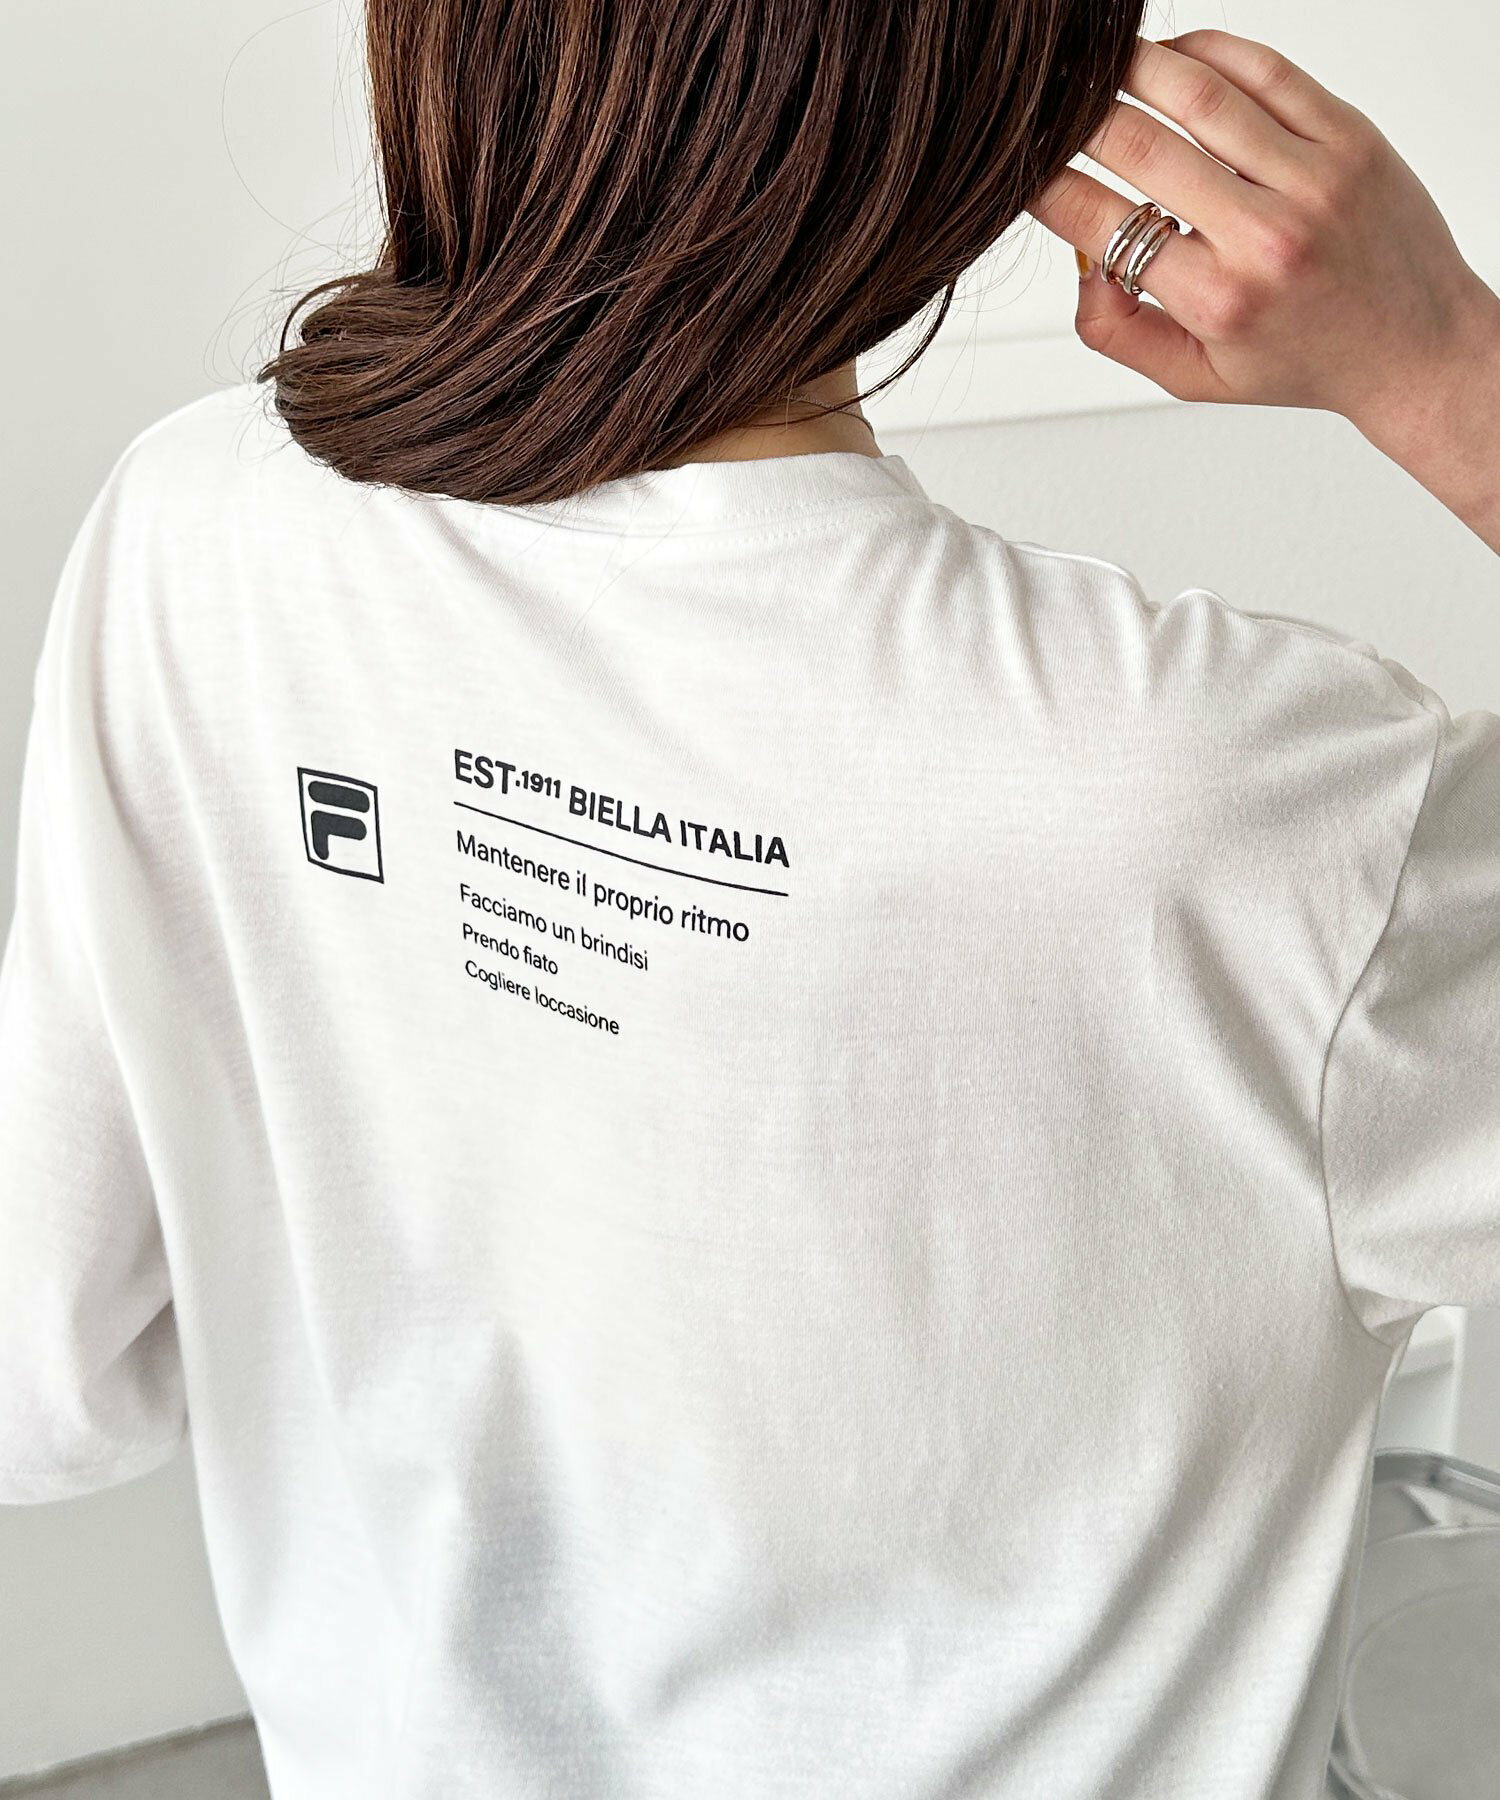 〈FILA〉ロゴプリントアソートTシャツ